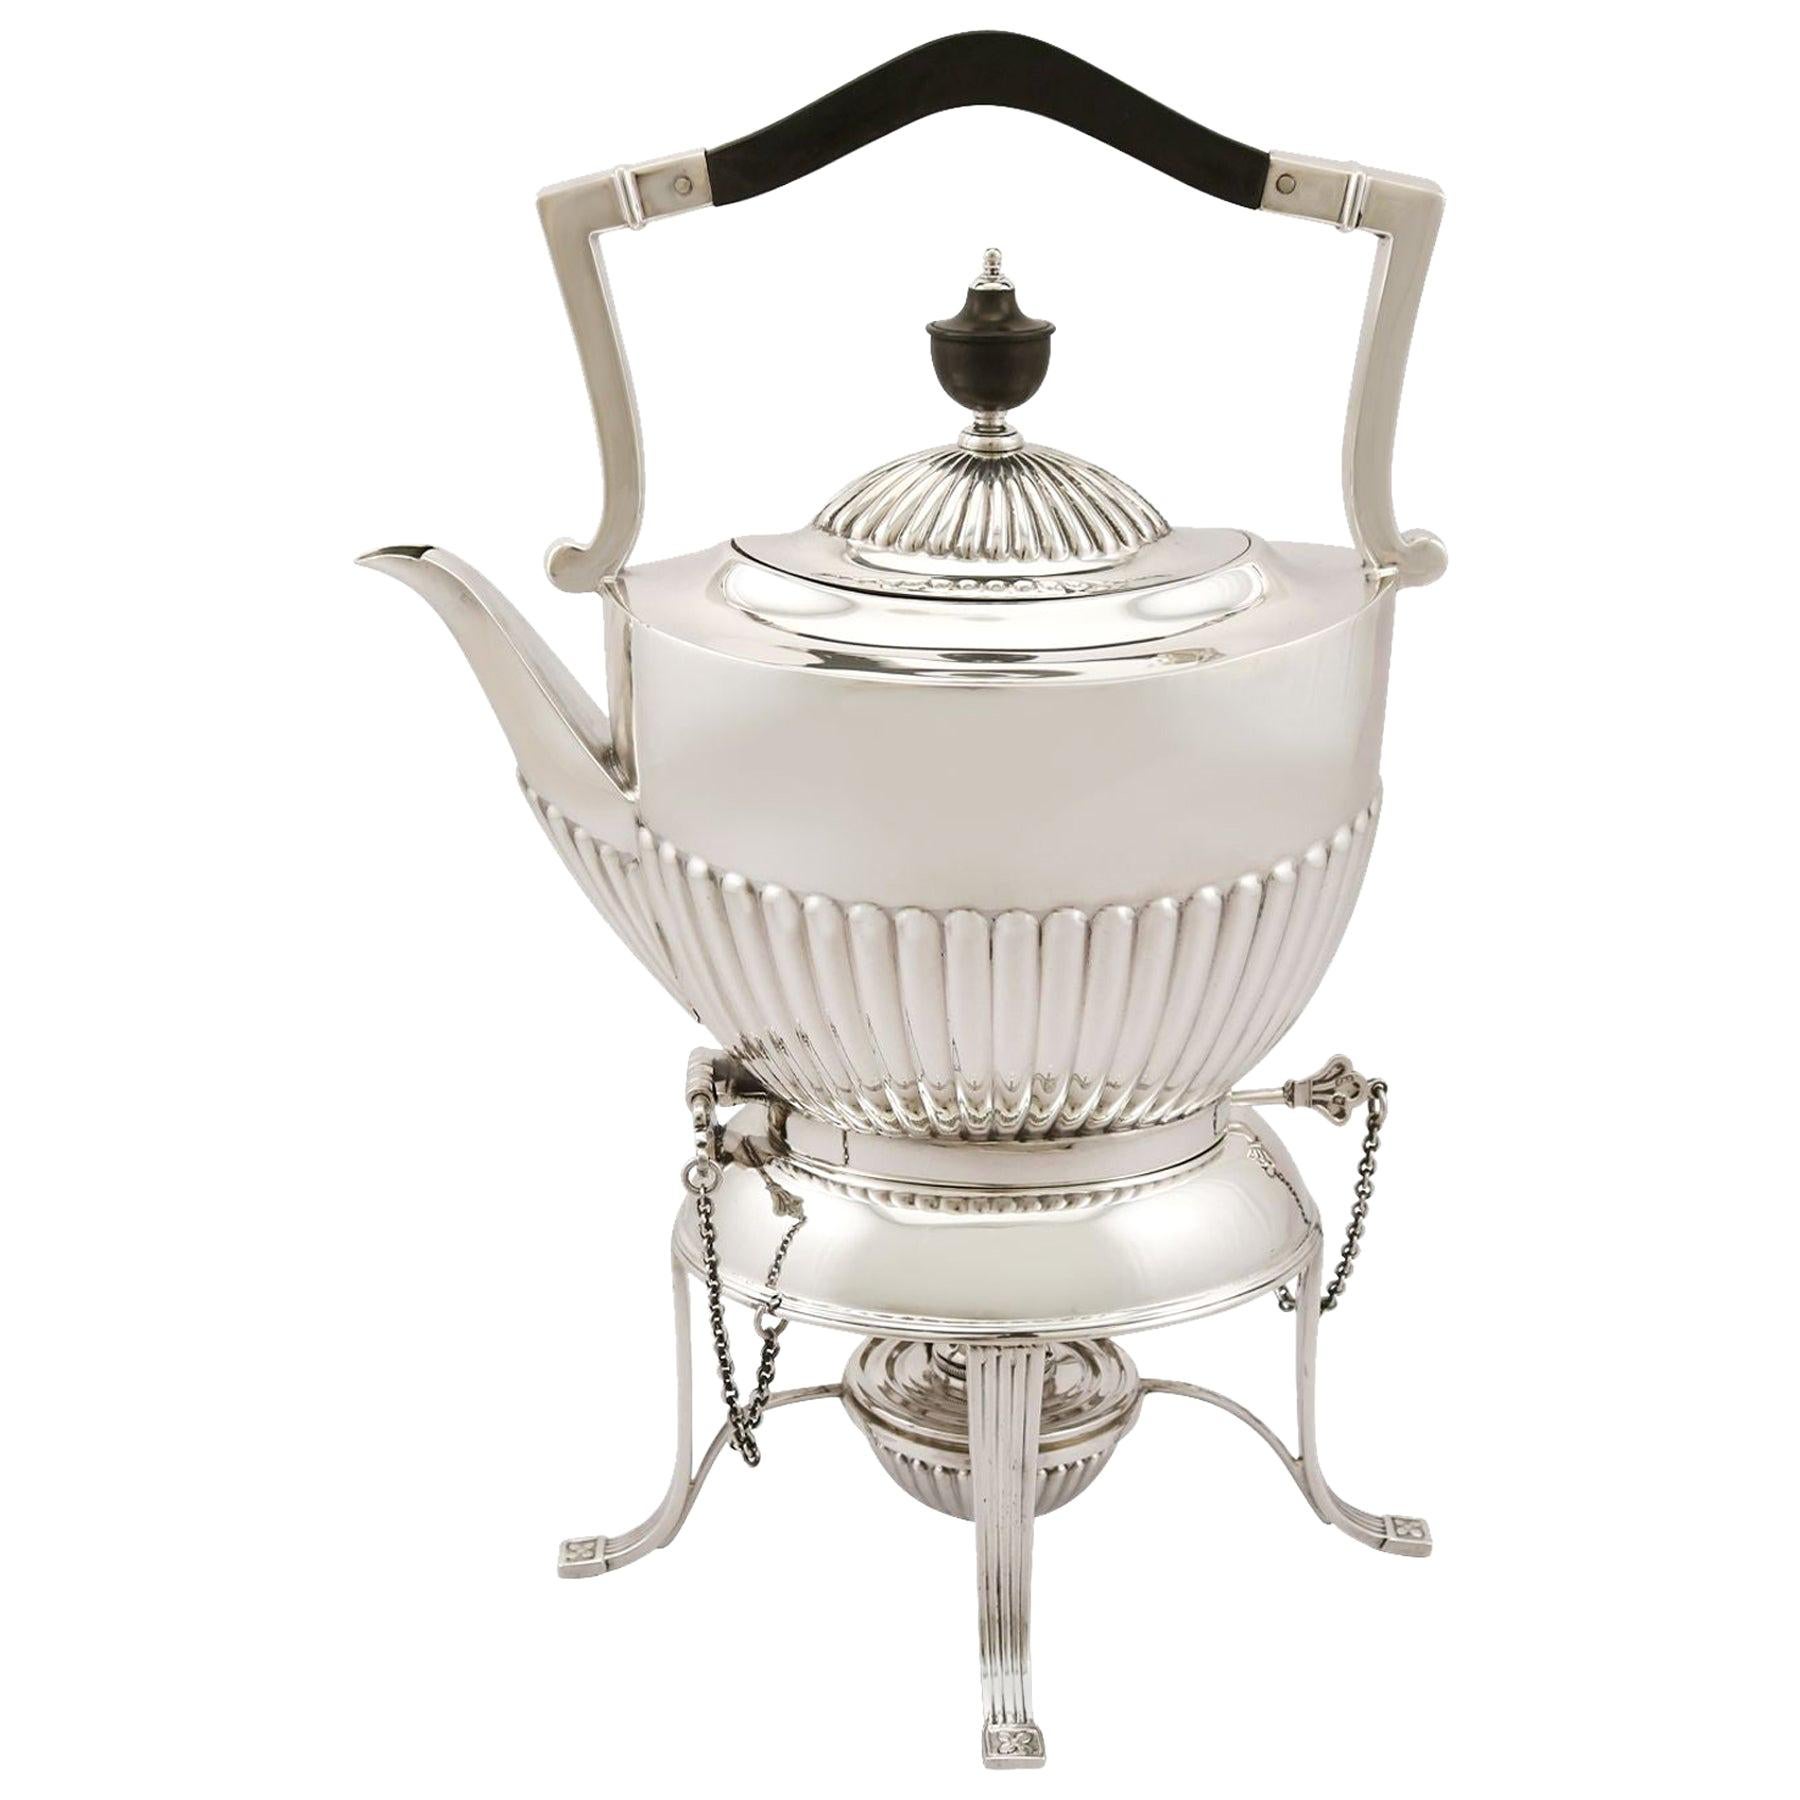 1913 Antique George V Sterling Silver Spirit Tea Kettle